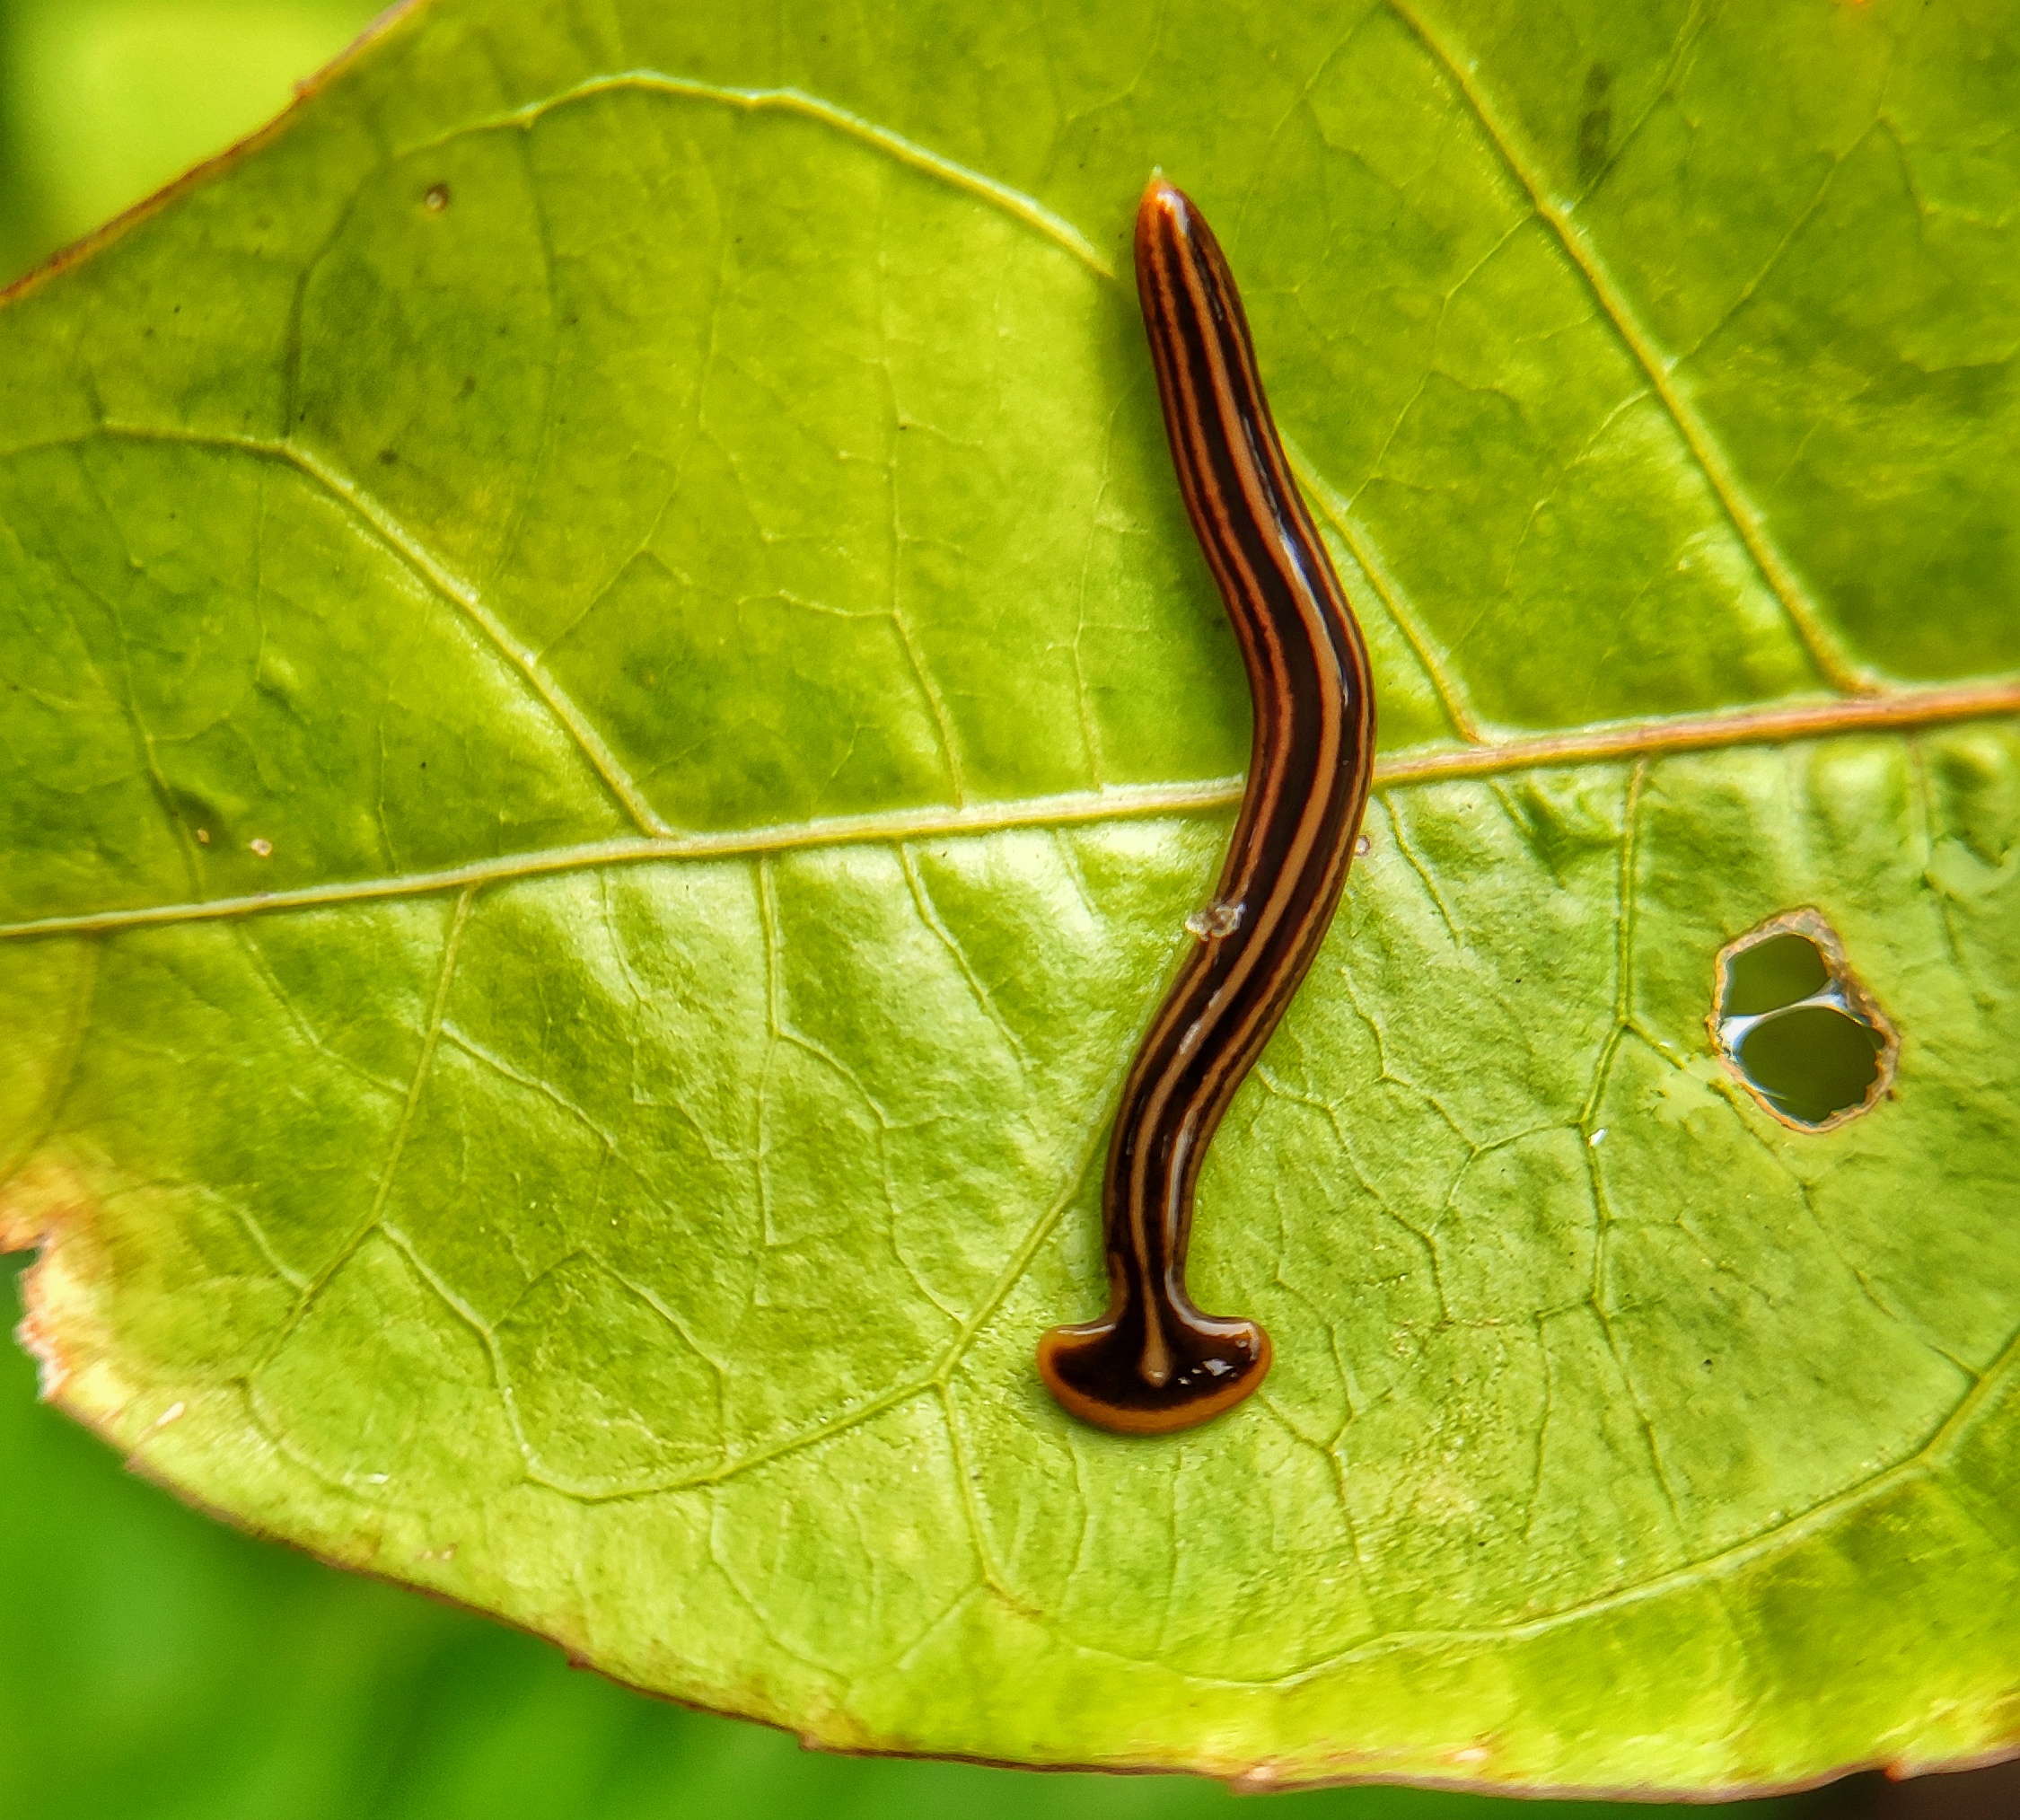 A worm on a leaf.